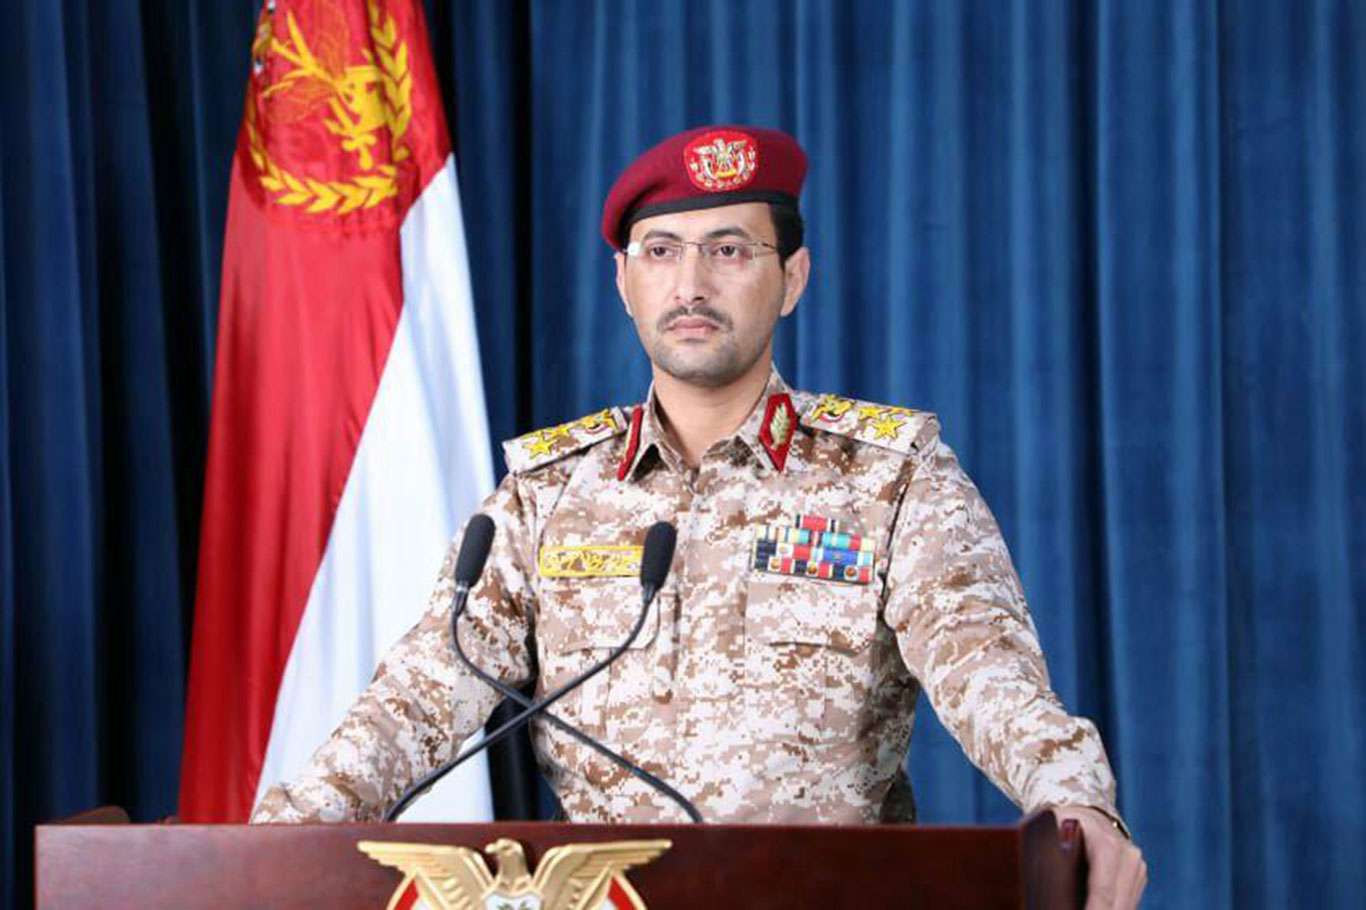 Yemeni forces hit Saudi Aramco facility with missile